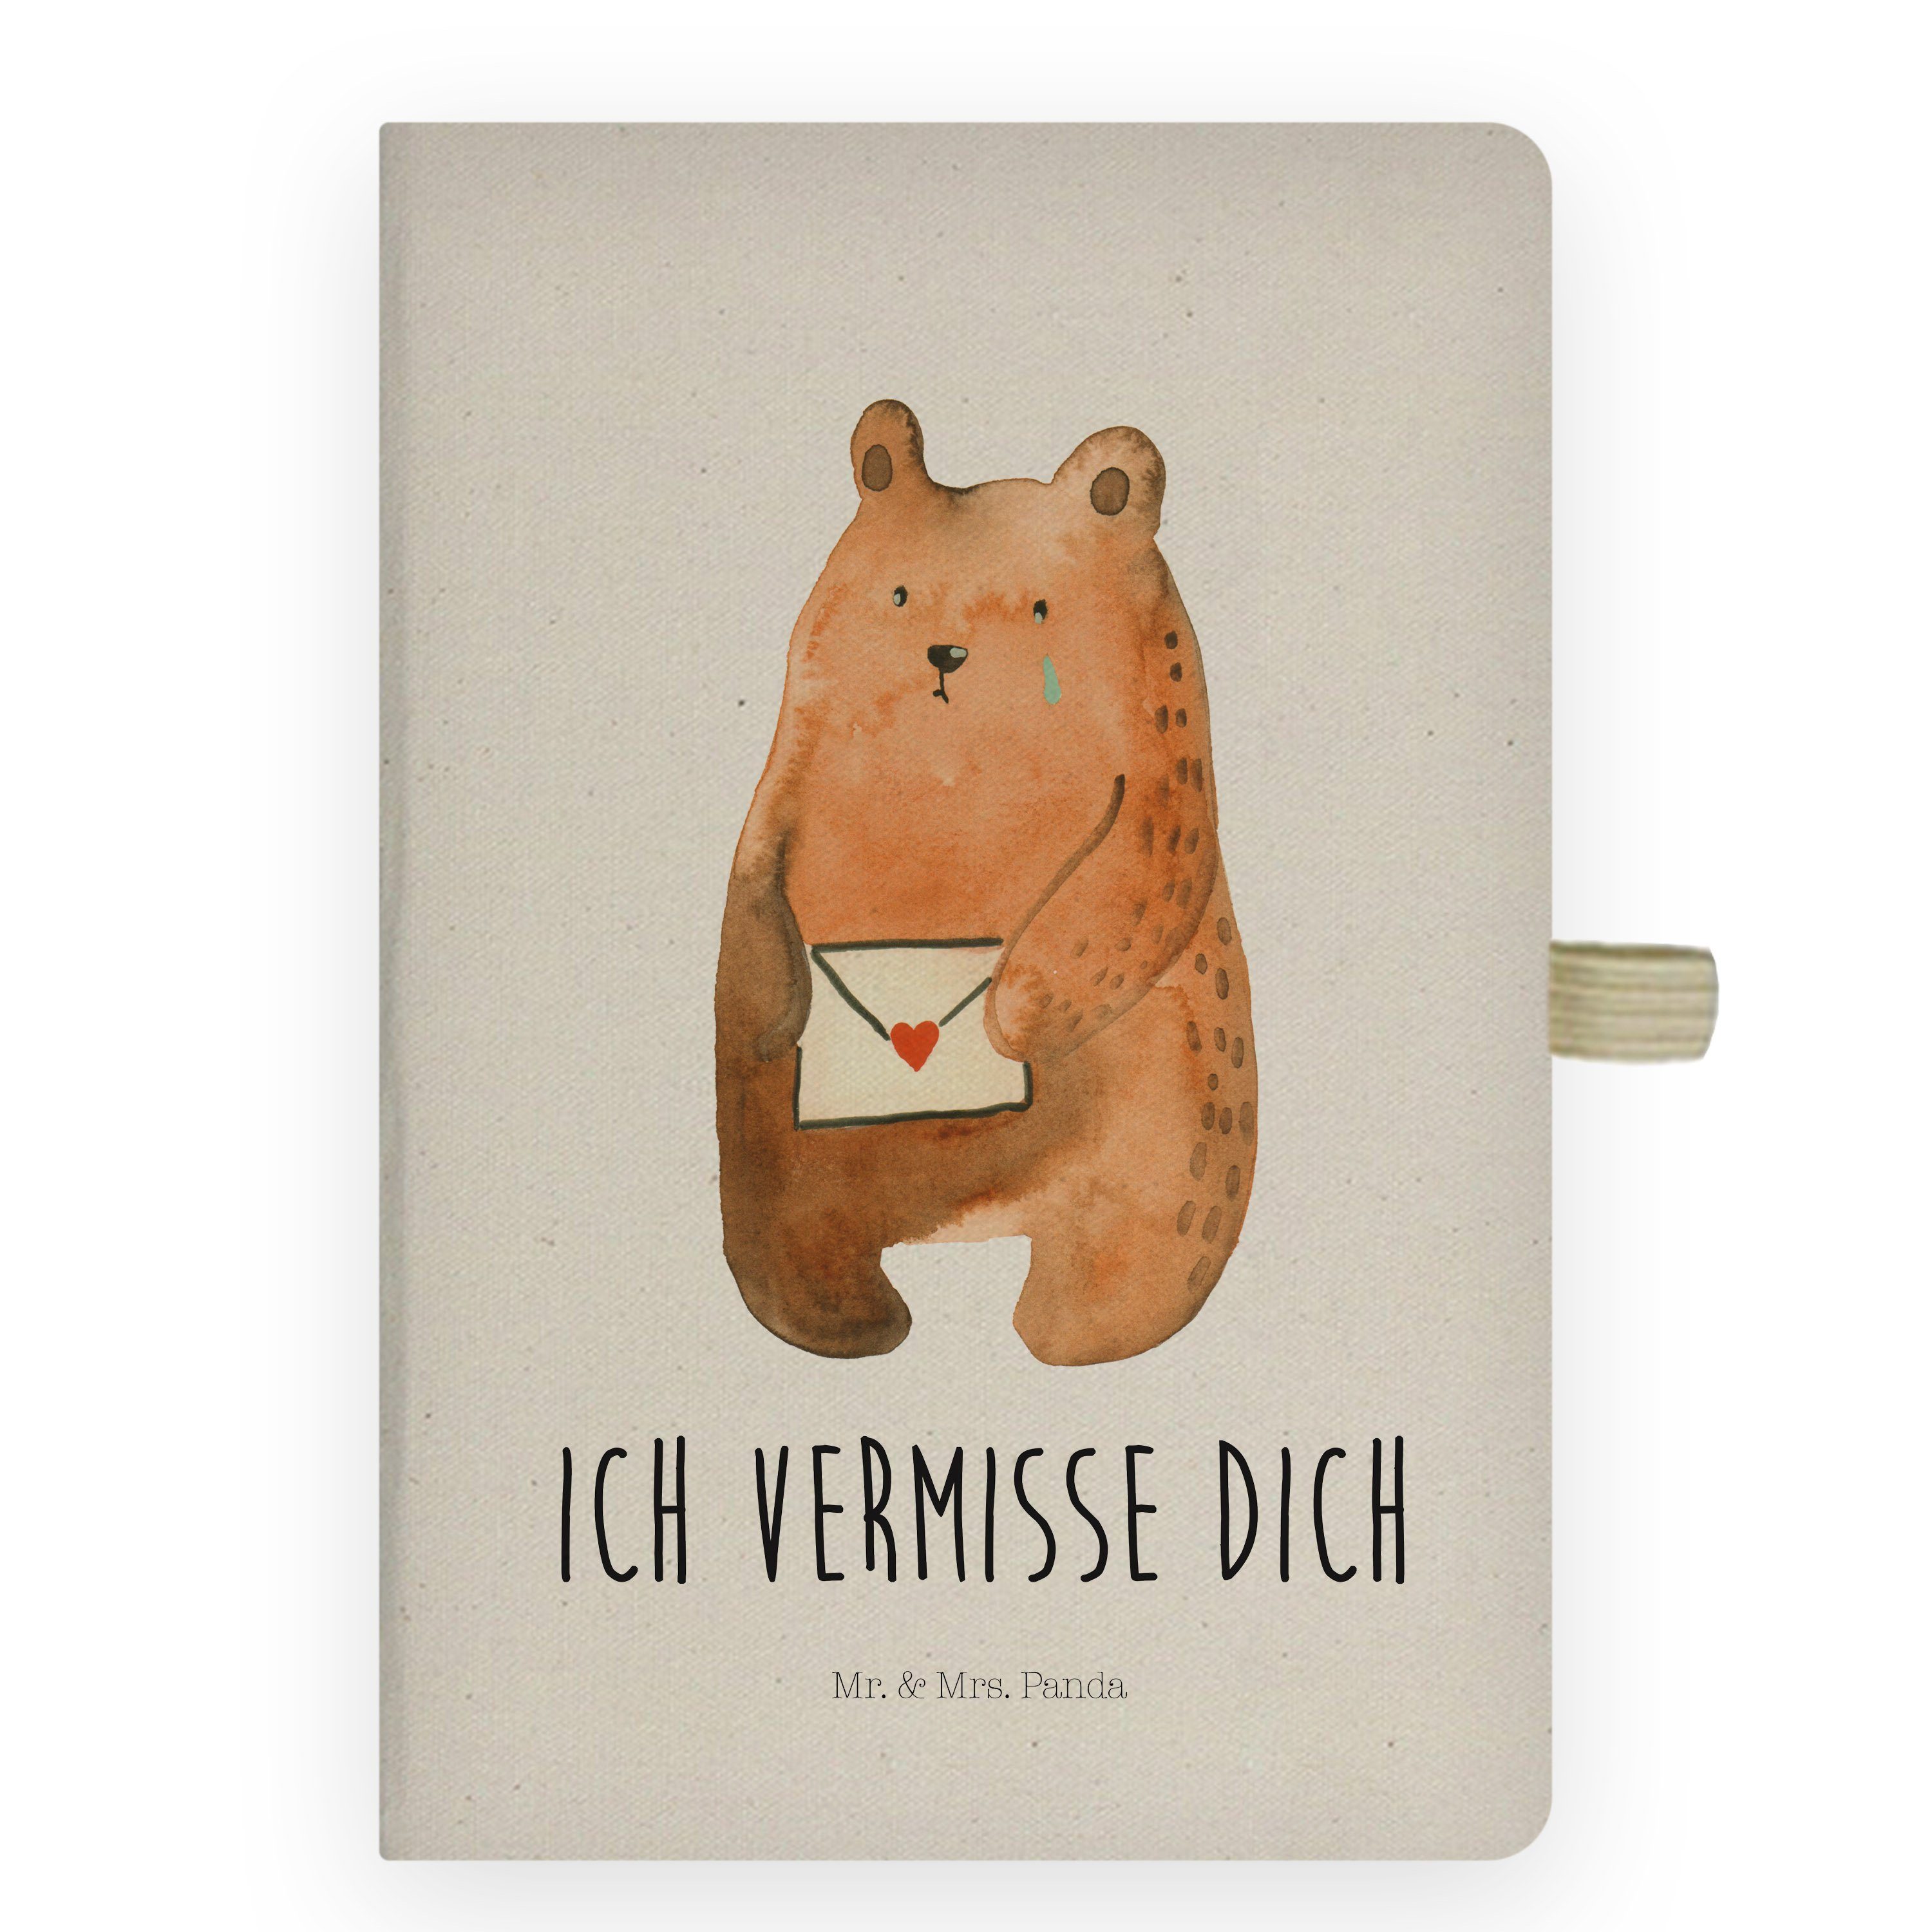 & Mr. Ich dich - Teddybär, Reise, Mrs. Panda Transparent Tage vermisse Geschenk, - Bär Notizbuch